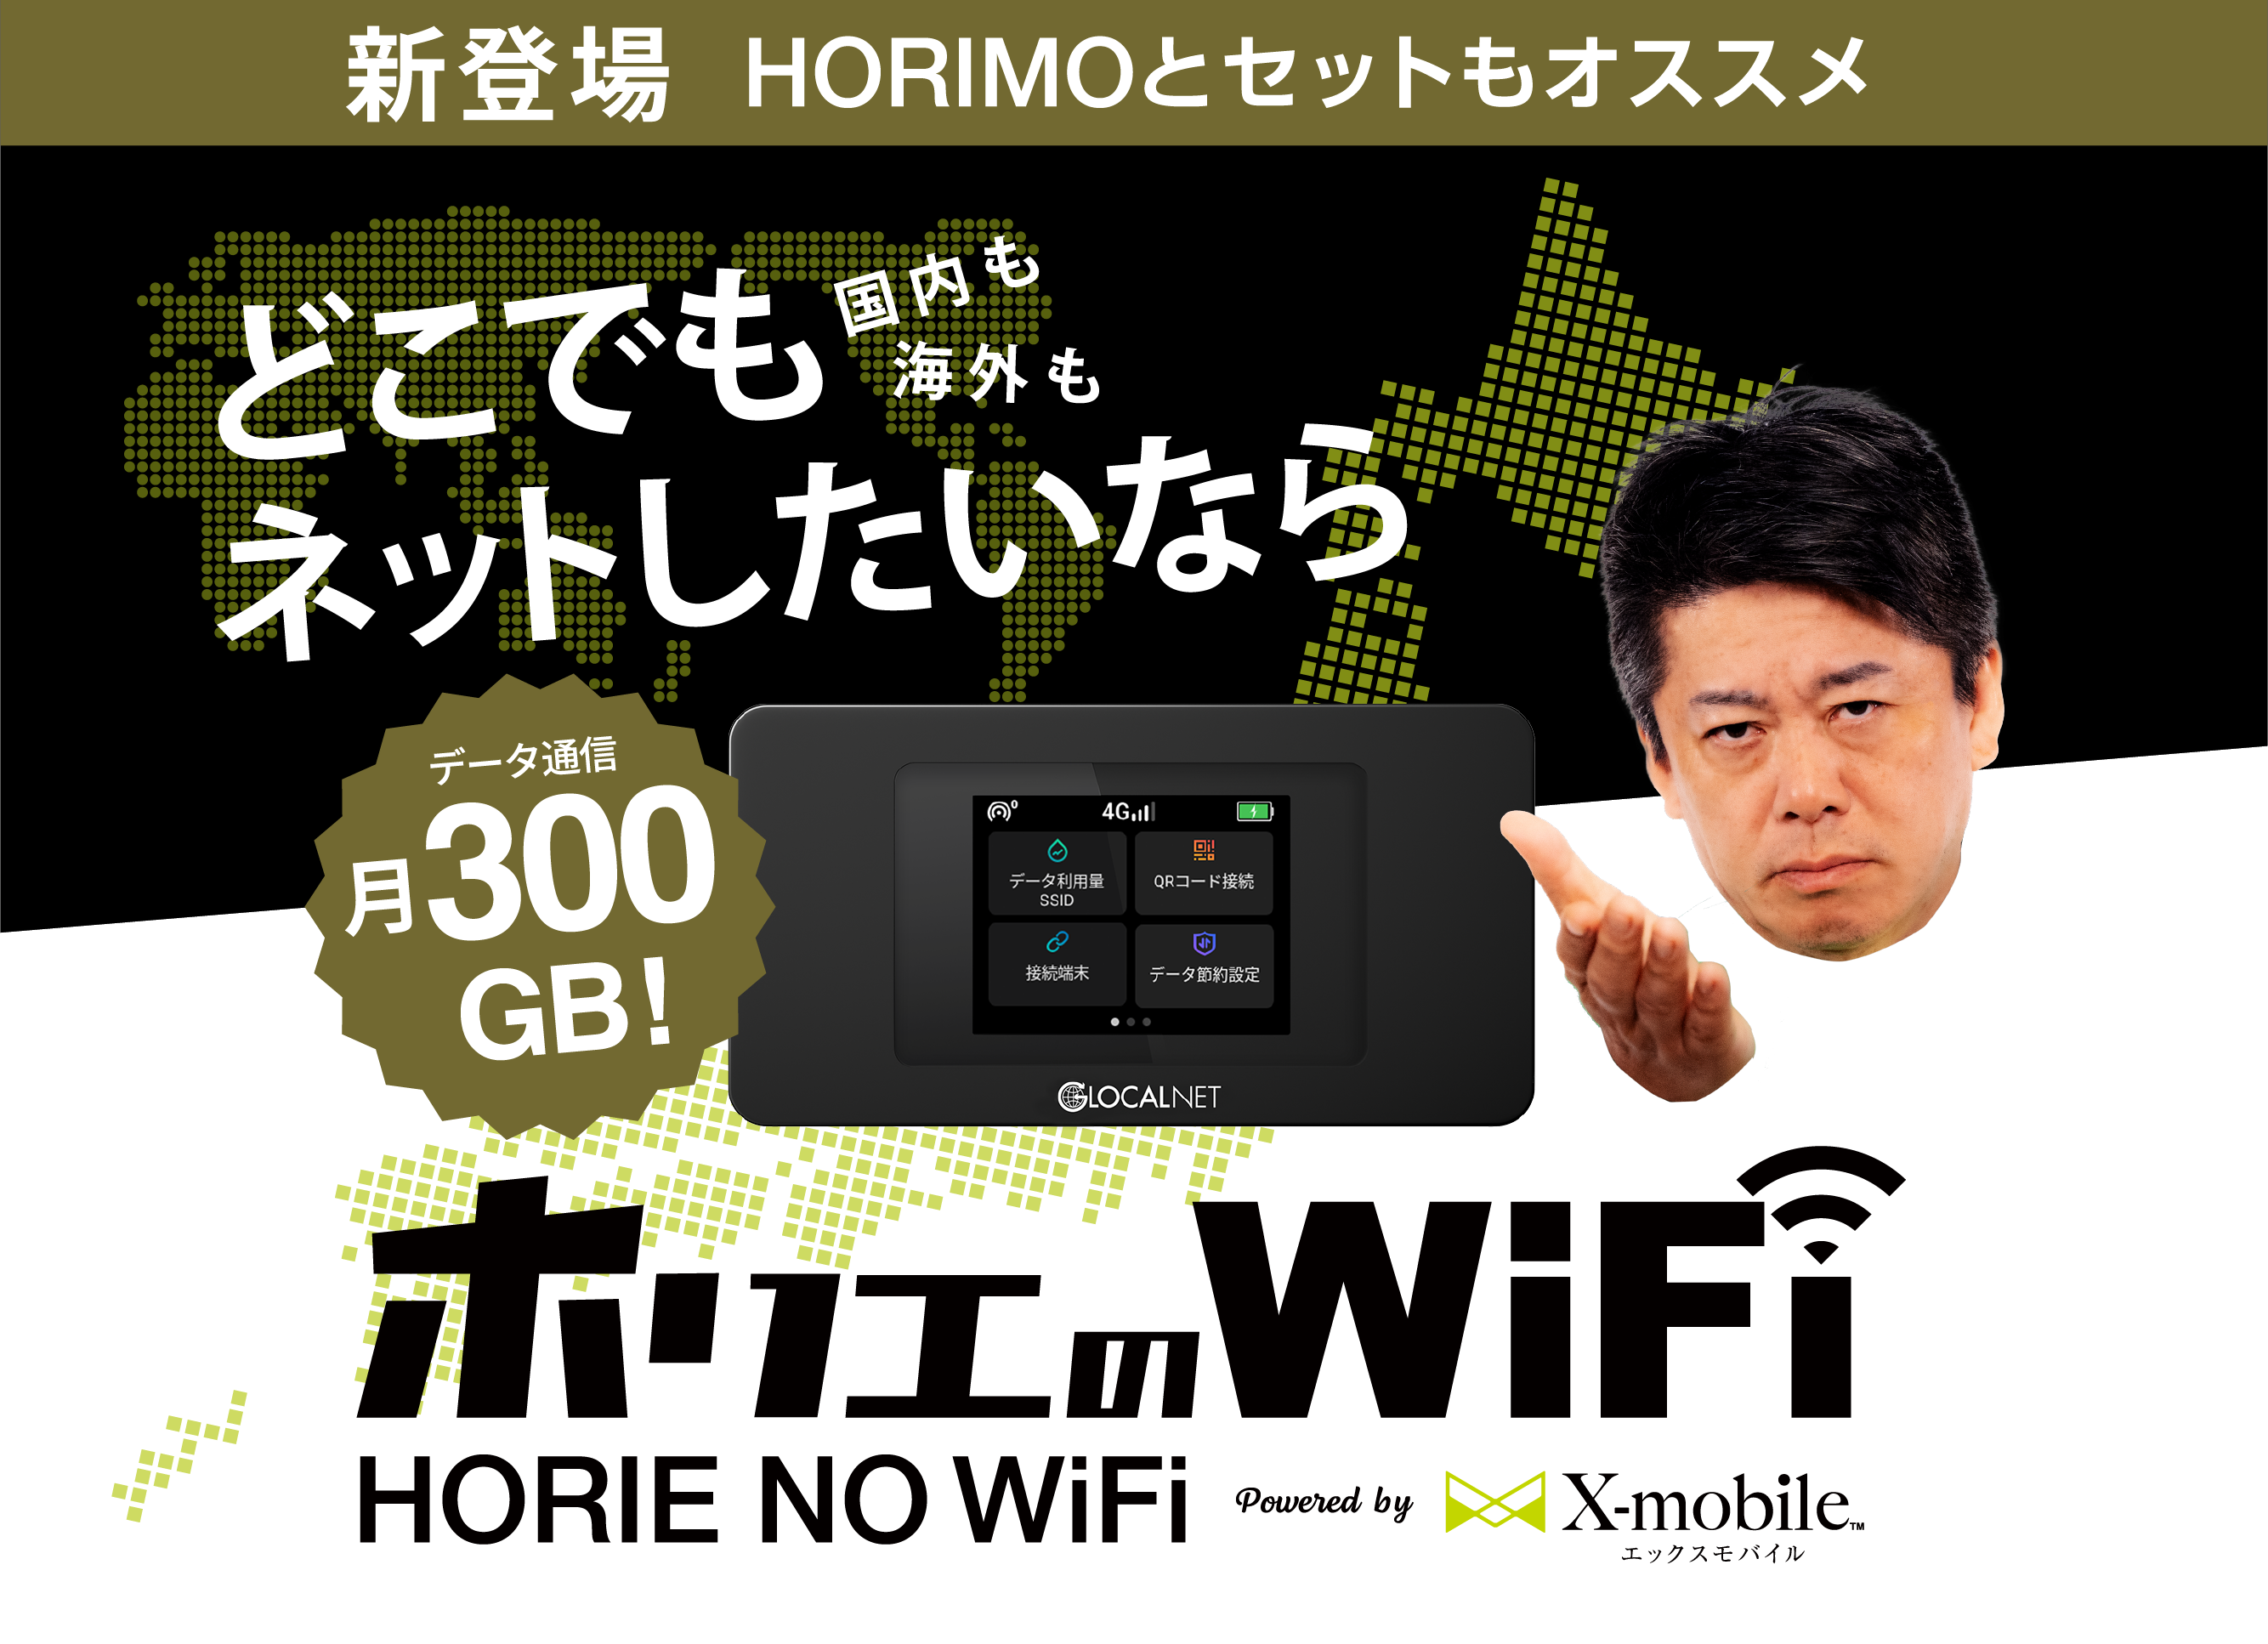 Horie Mobile slide 2 pc